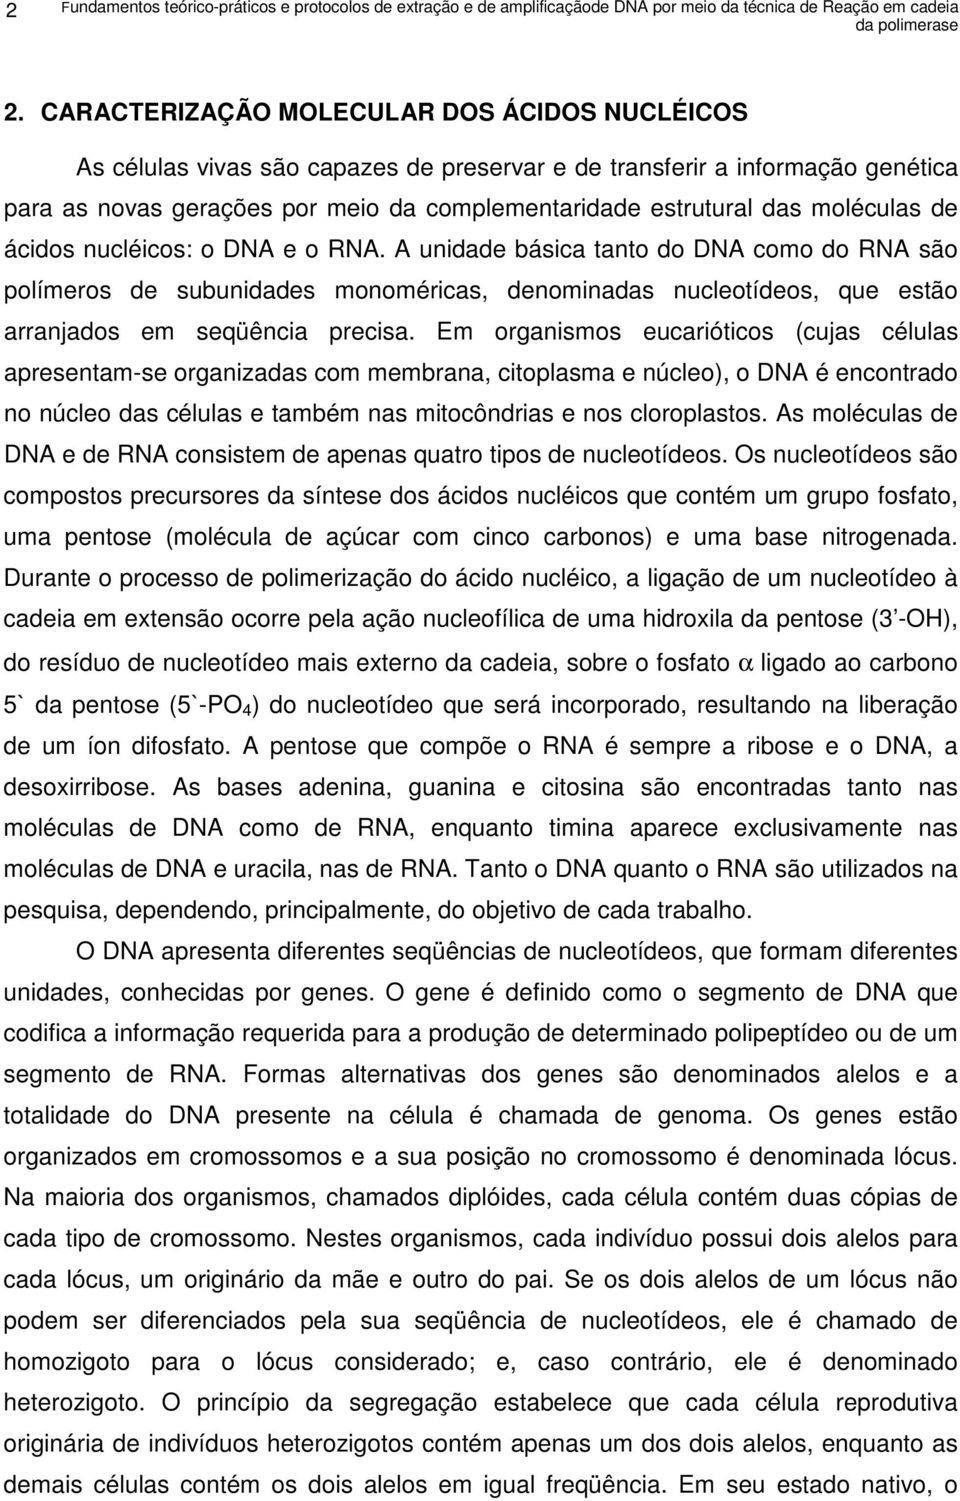 moléculas de ácidos nucléicos: o DNA e o RNA. A unidade básica tanto do DNA como do RNA são polímeros de subunidades monoméricas, denominadas nucleotídeos, que estão arranjados em seqüência precisa.